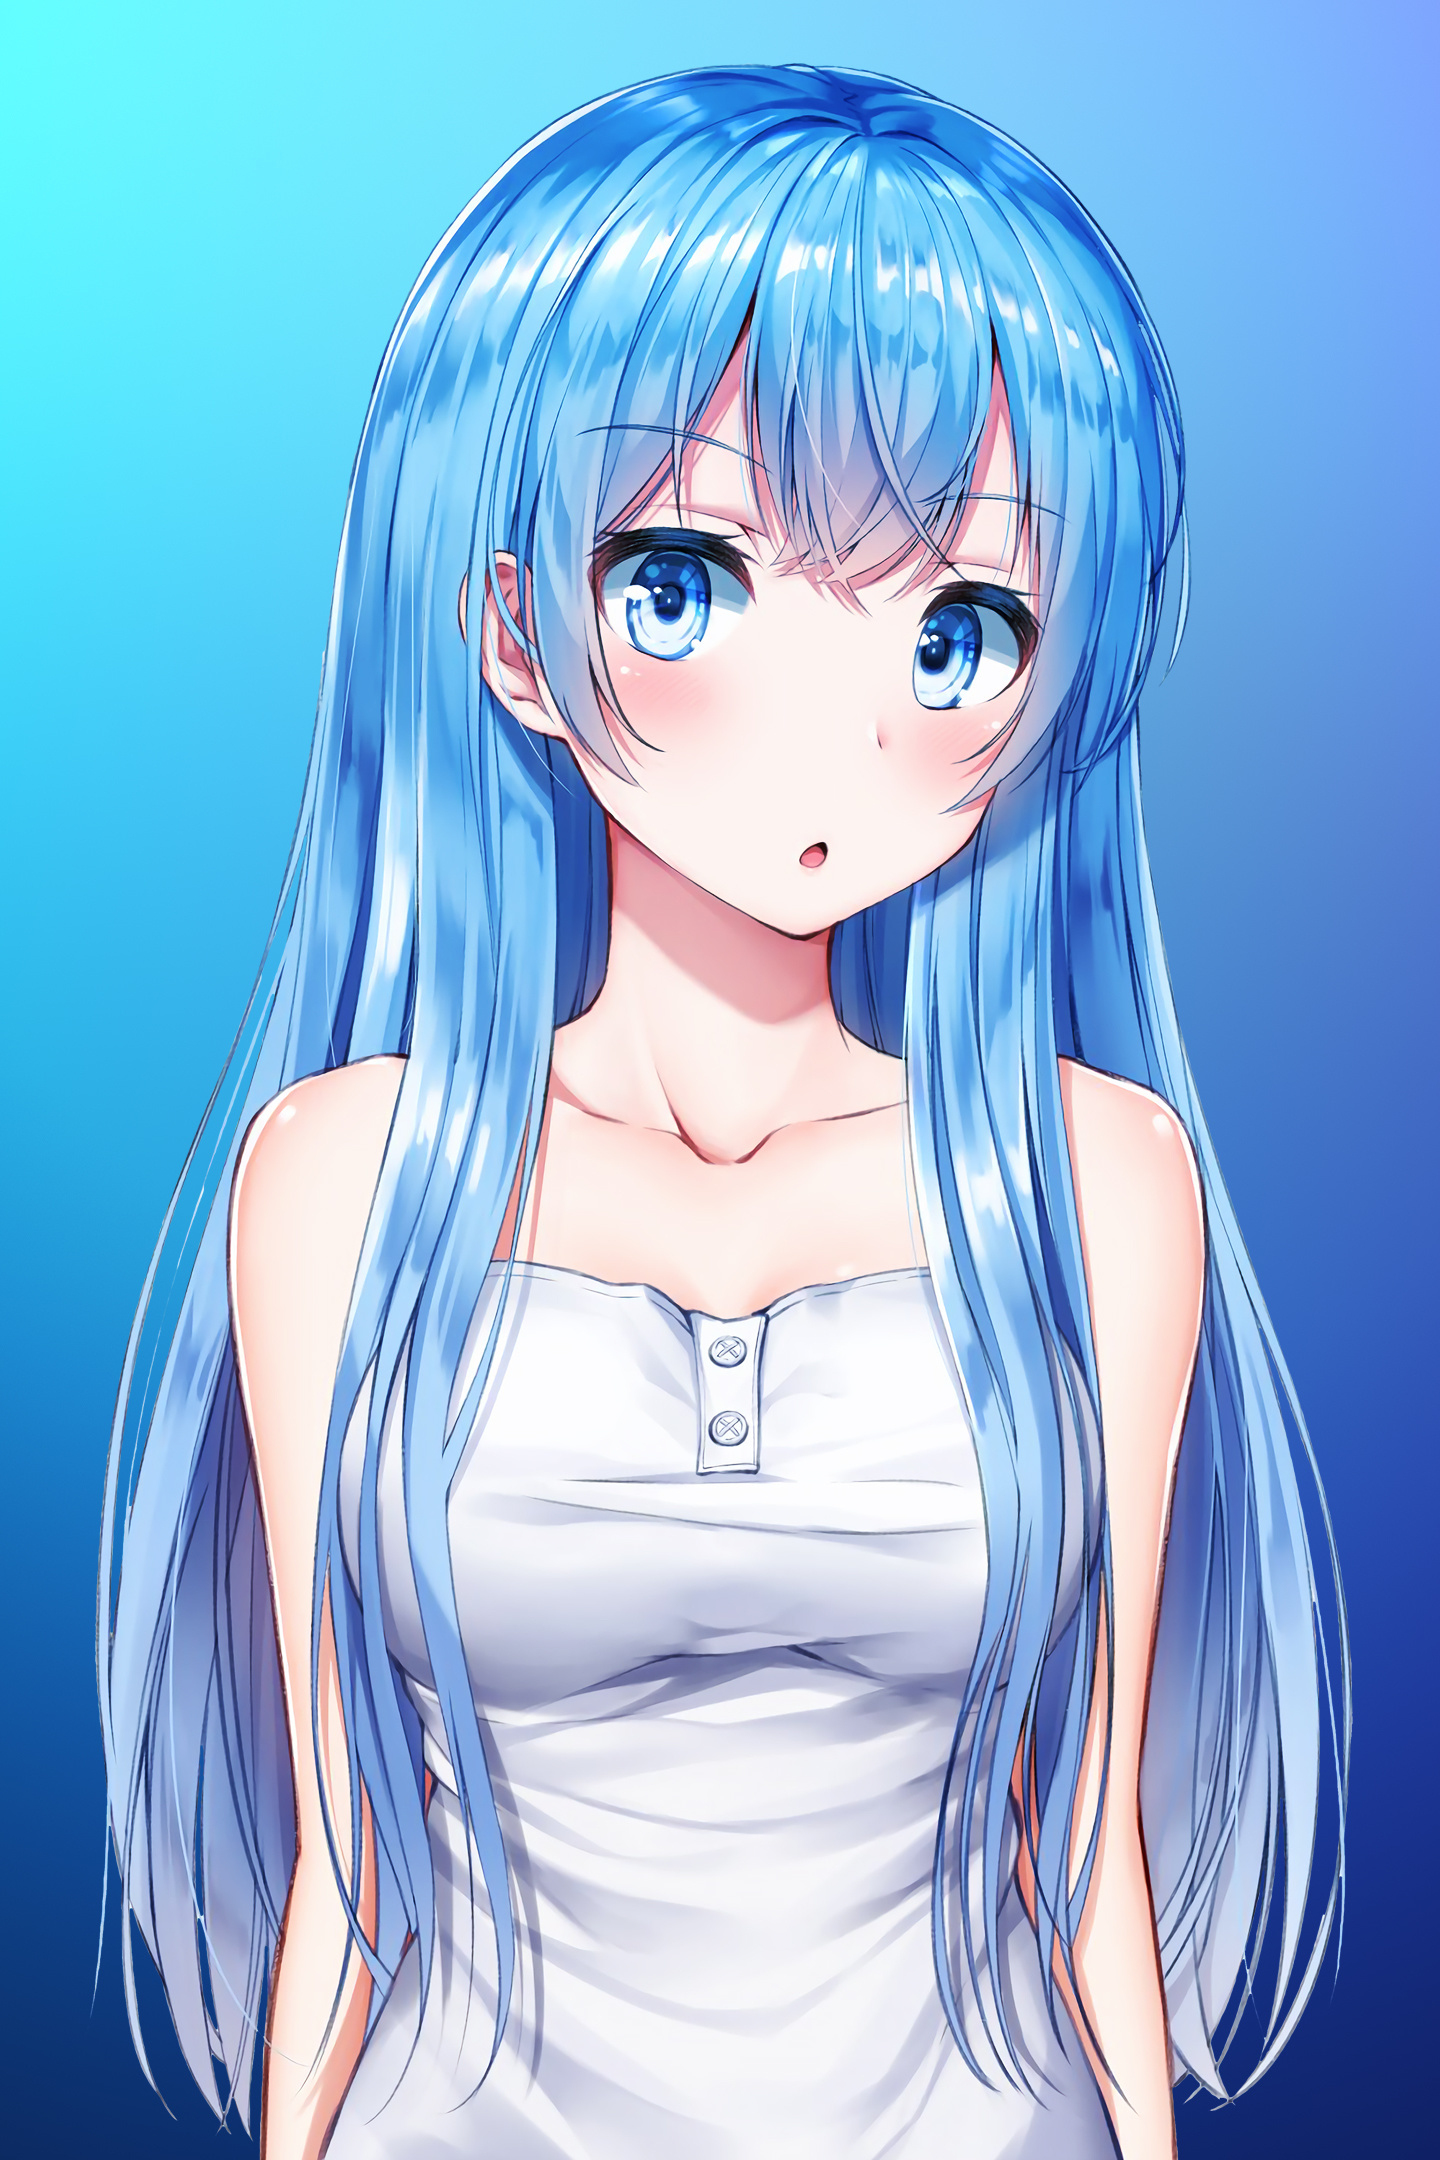 Download wallpaper 1440x2560 blue hair, anime girl, cute, original, qhd  samsung galaxy s6, s7, edge, note, lg g4, 1440x2560 hd background, 4863